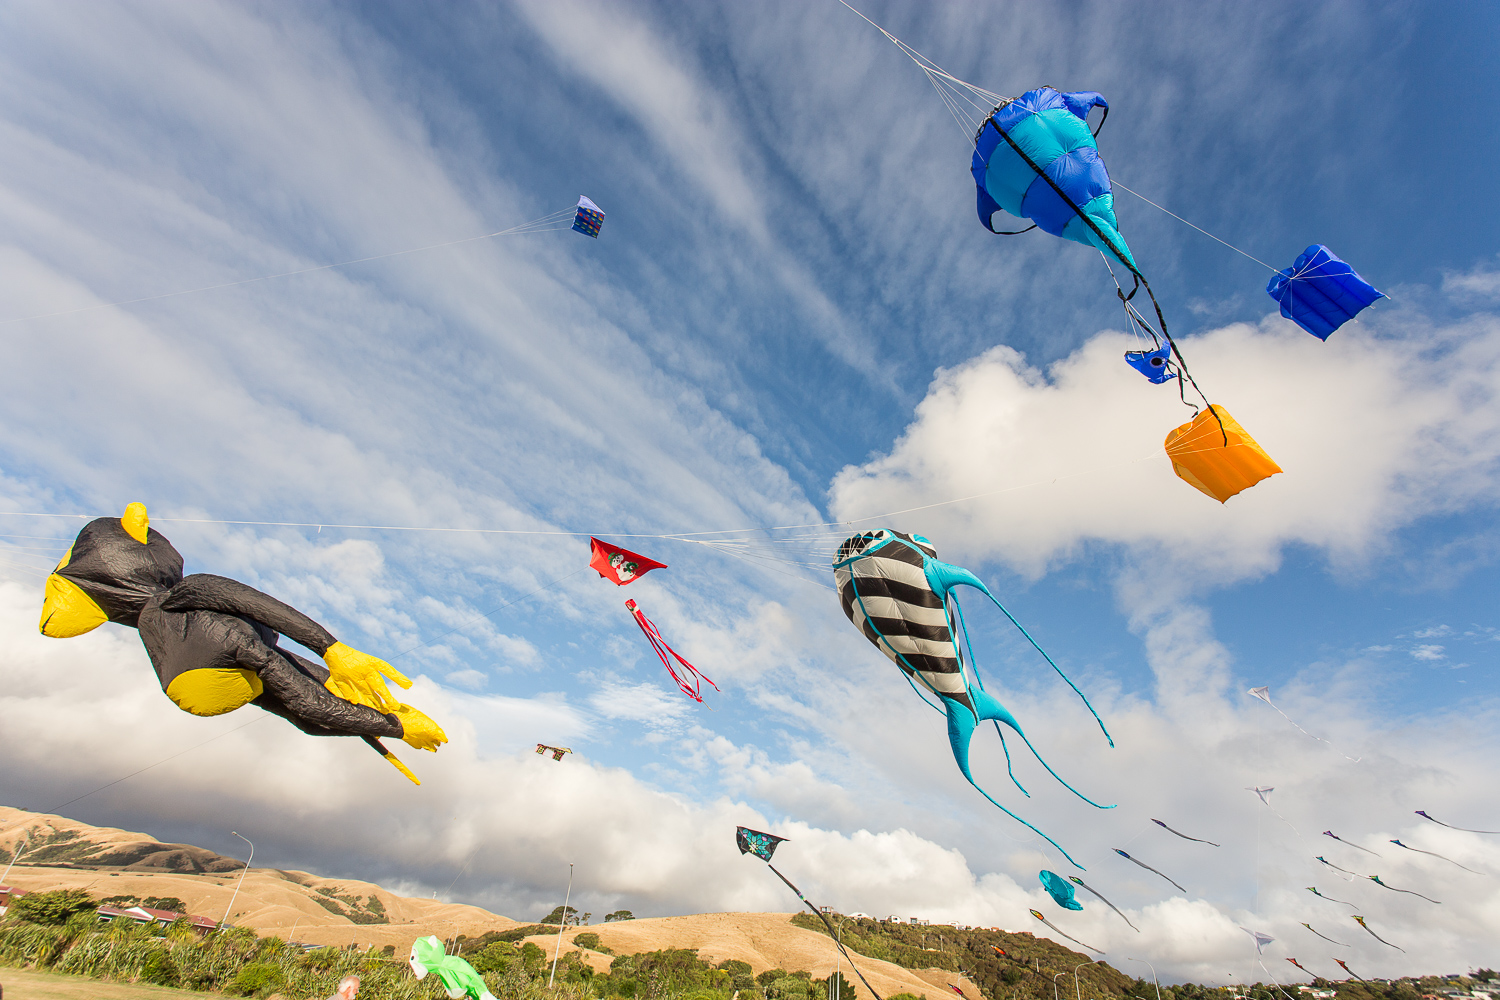 A sky full of kites